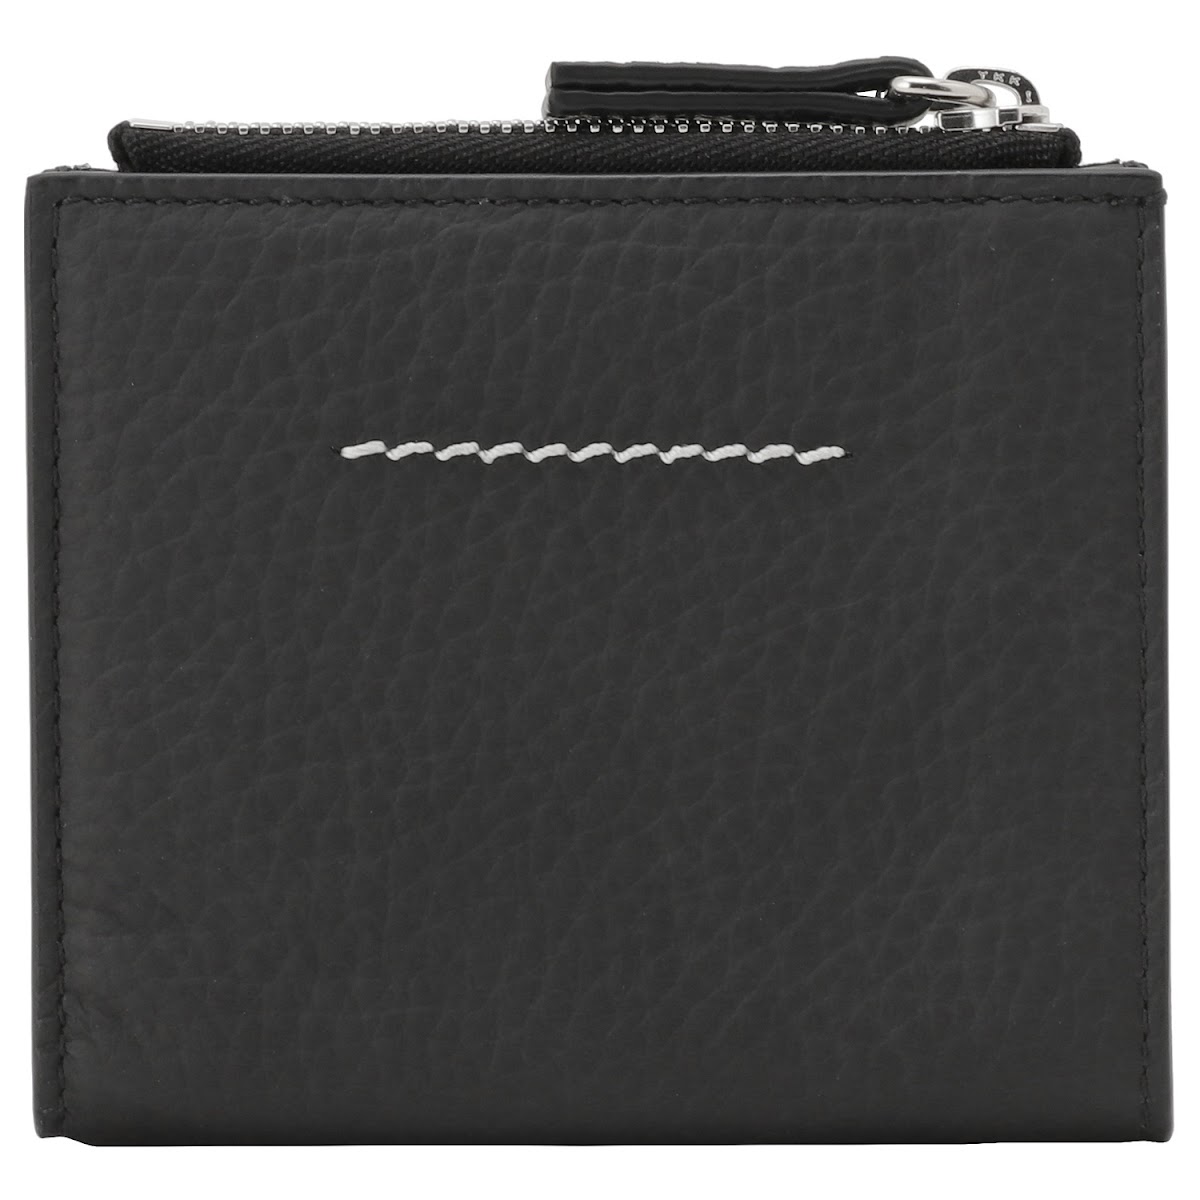 エムエムシックス メゾンマルジェラ MM6 SA5UI0001 P4535 H9095 エンボスロゴ 二つ折り財布 ミニ財布 ブラック レディース ユニセックス Flap Wallet  MM6 Embossed Logo